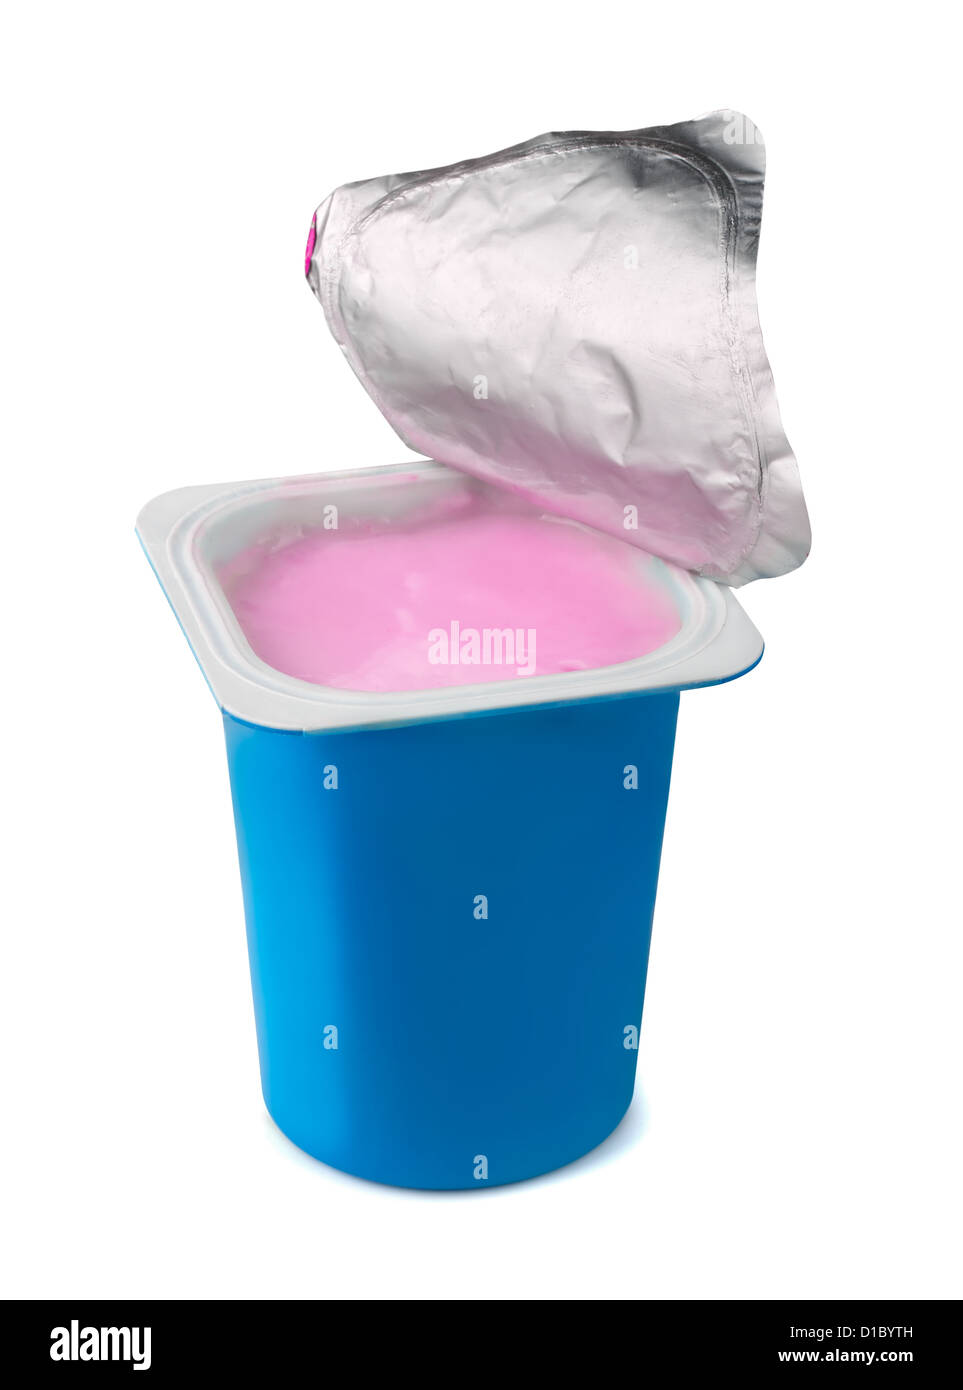 Fruit yogurt in blue plastic box isolated on white Stock Photo